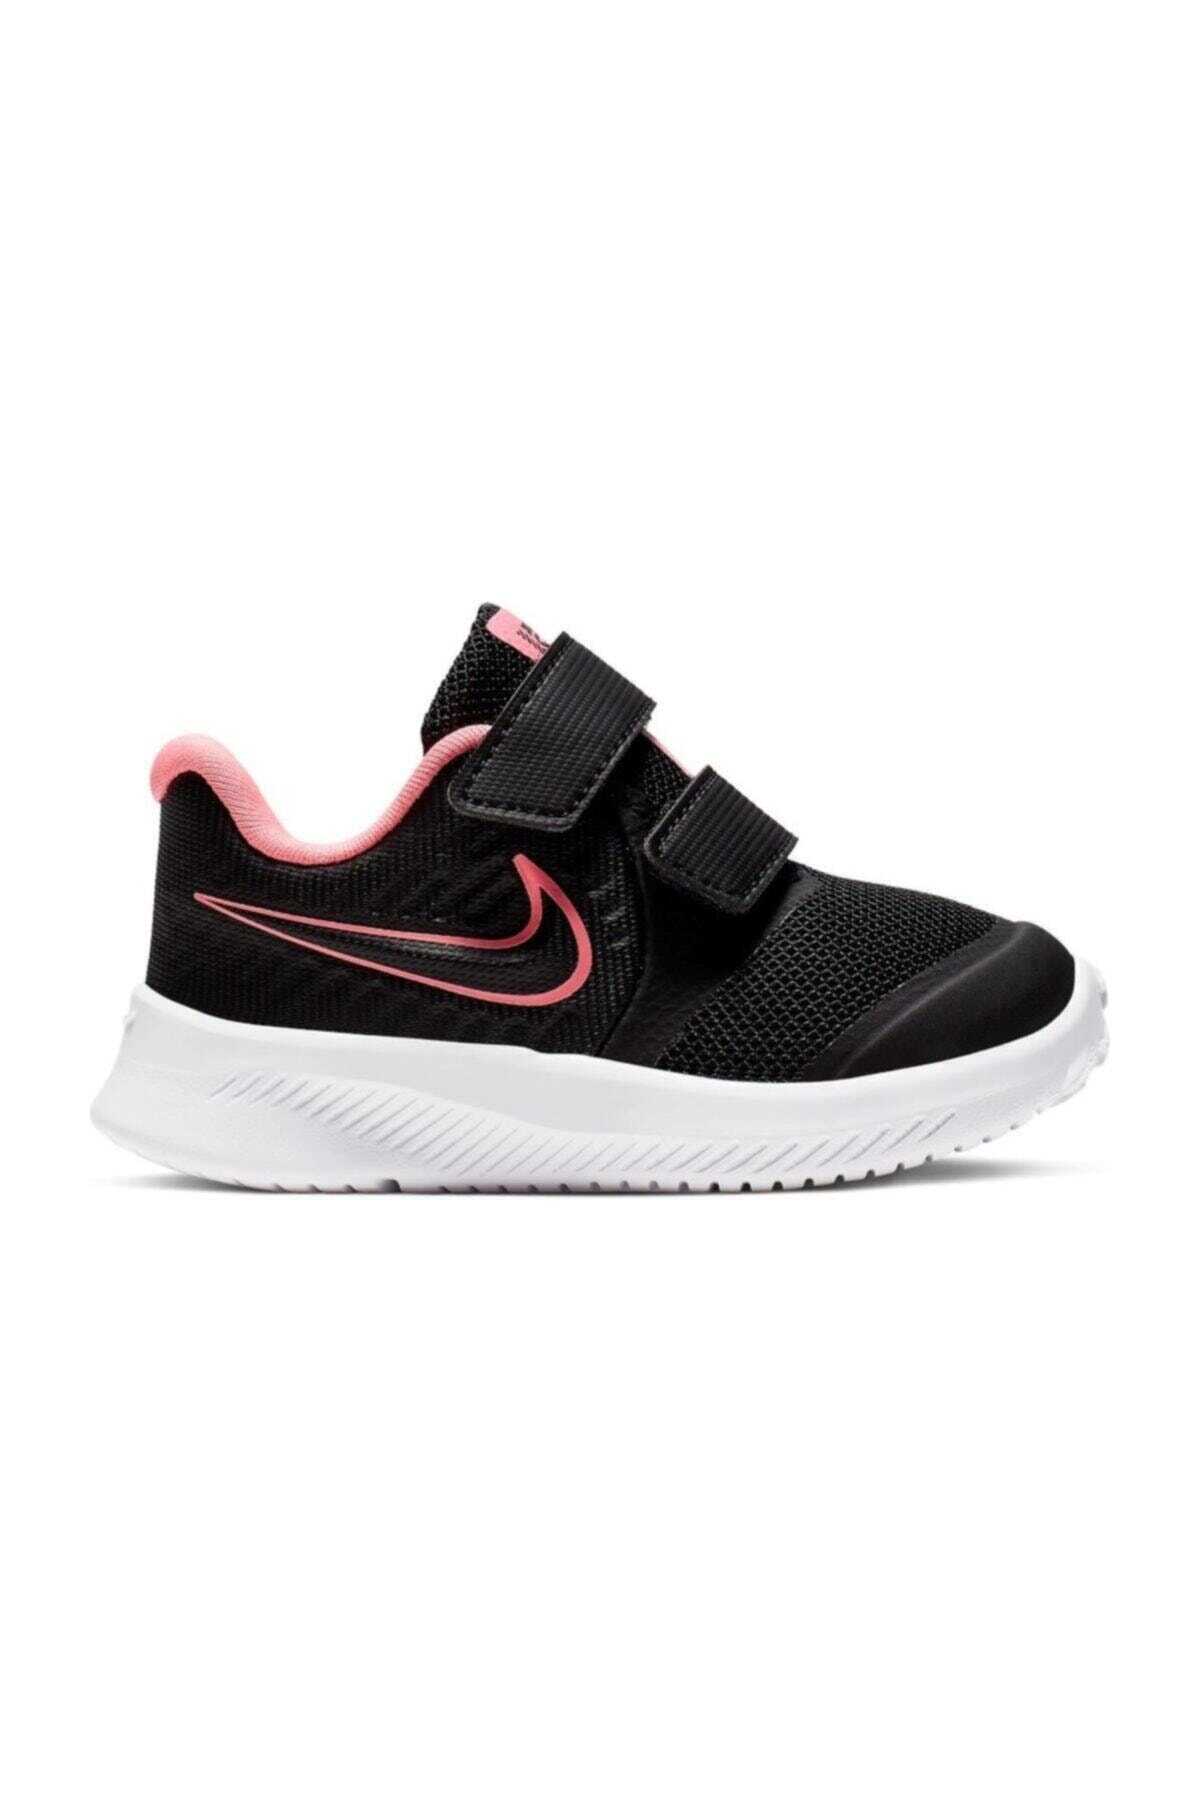 کفش ورزشی دو چسب بچه گانه دخترانه مشکی برند Nike 